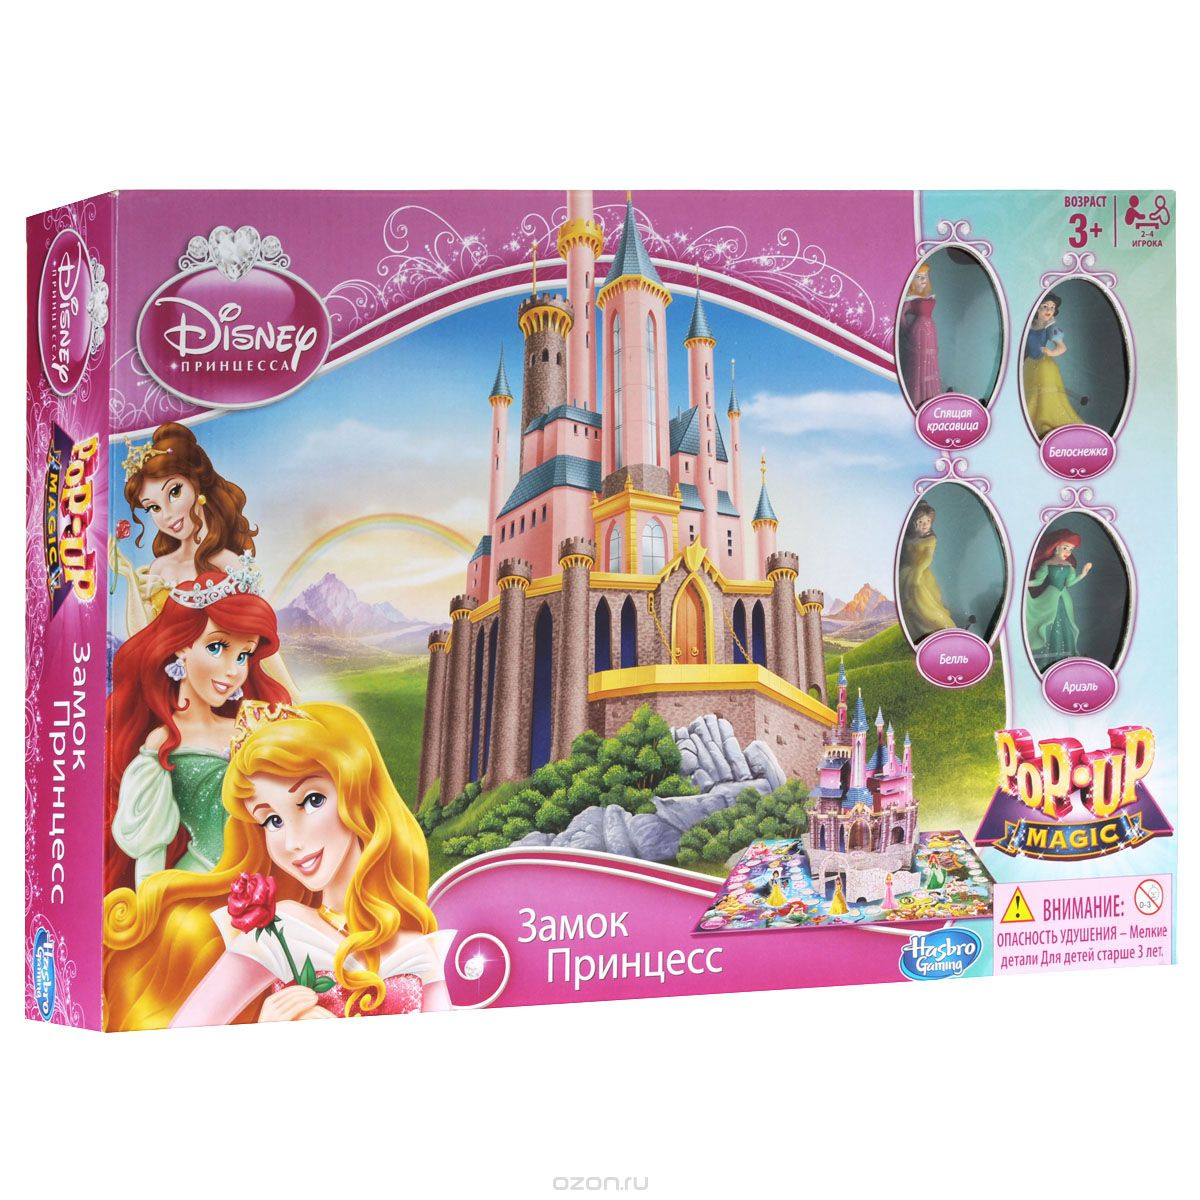 Отзывы о Chicco Волшебный замок Принцесс Disney